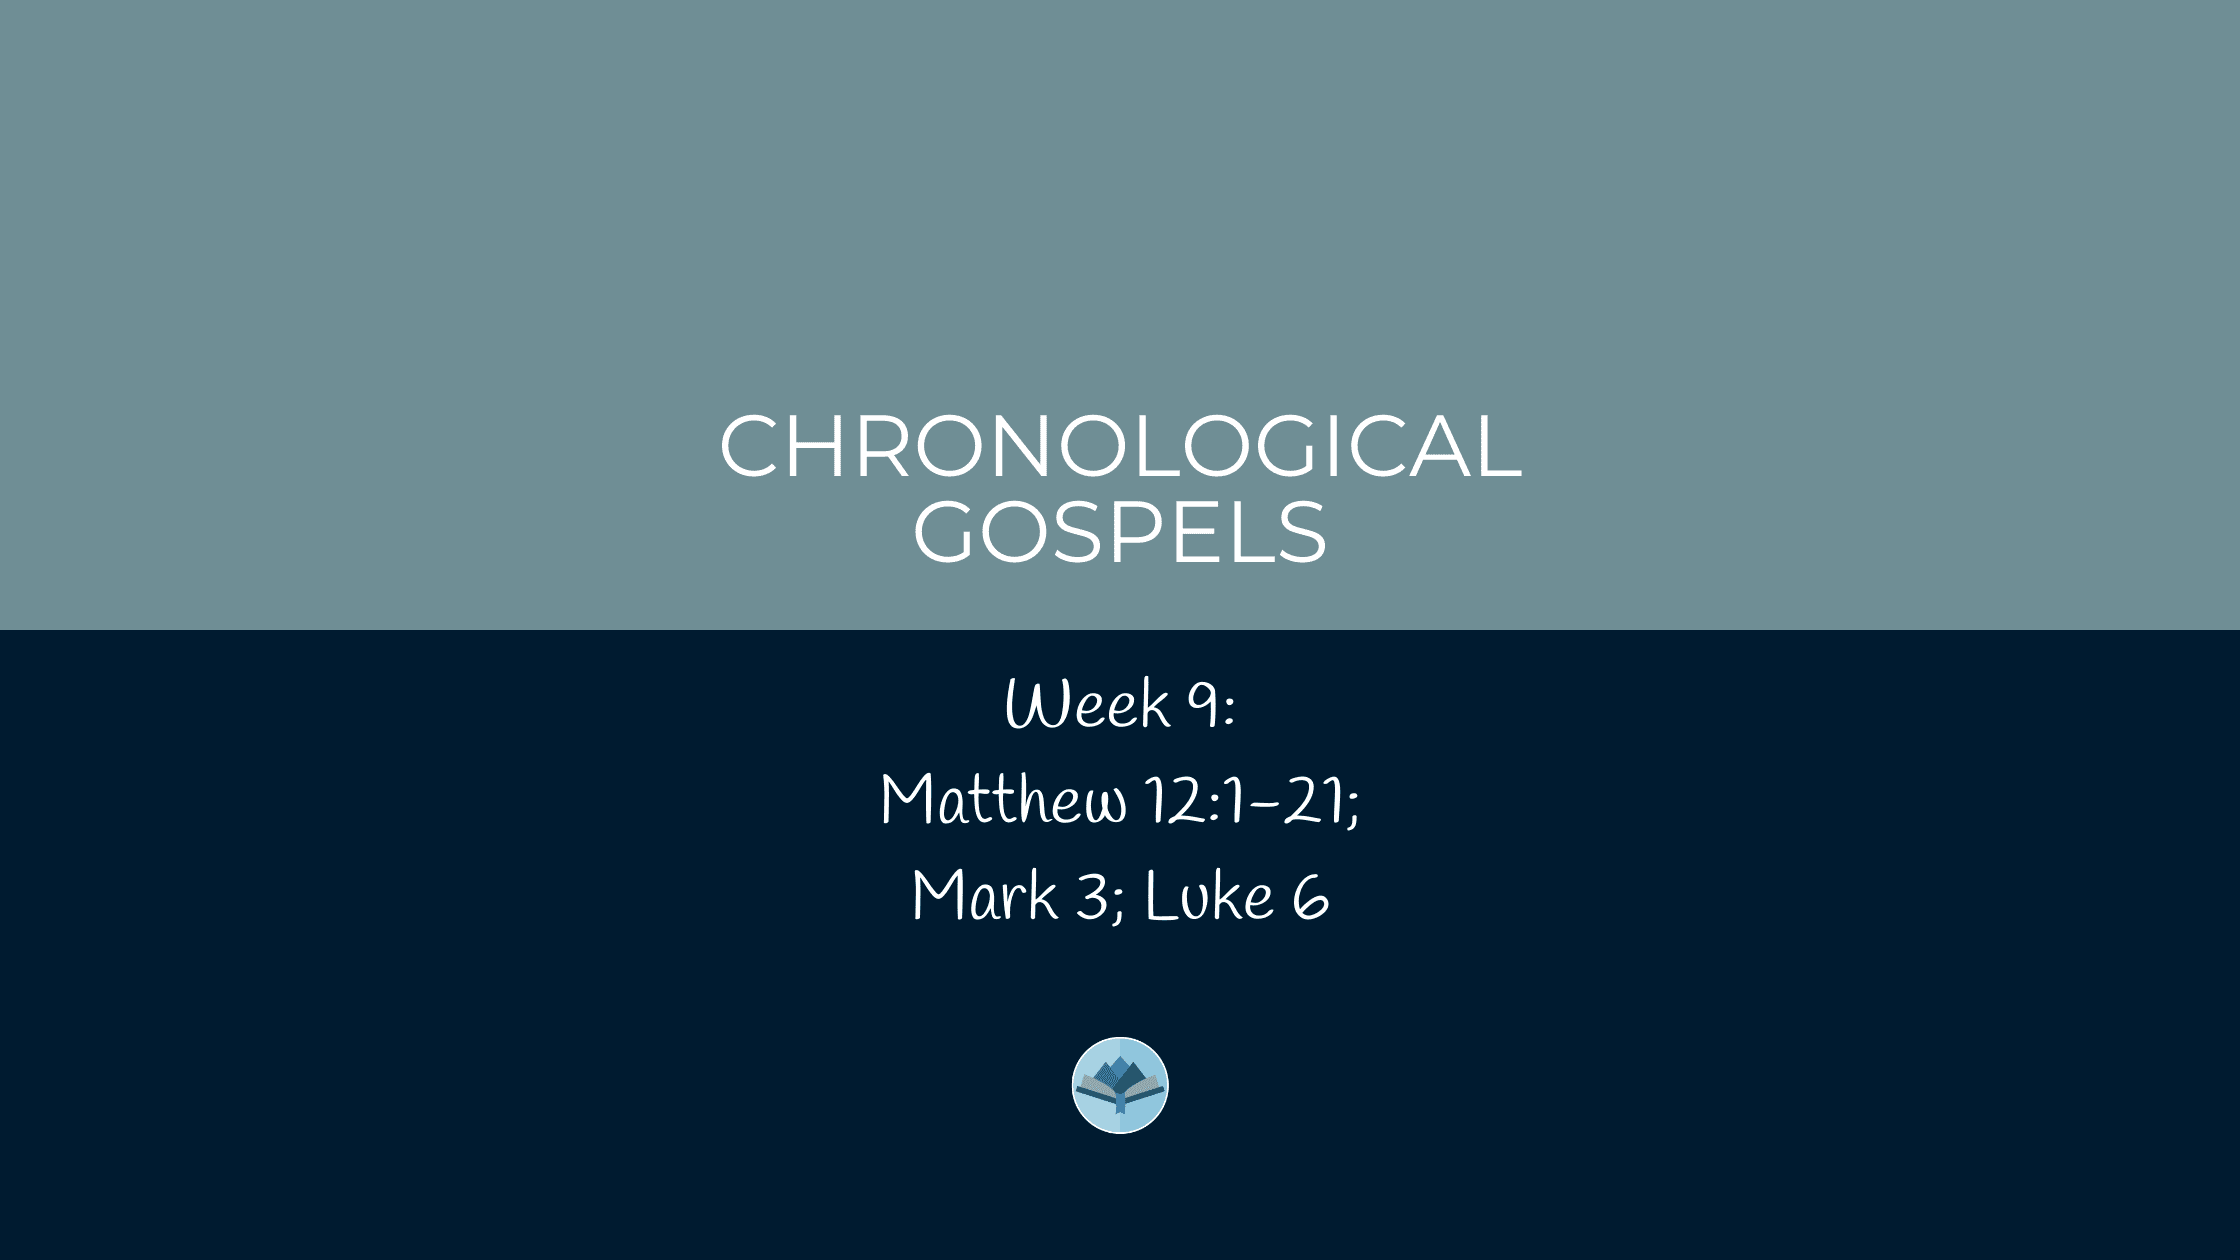 Chronological Gospels: Matthew 12:1-21; Mark 3; Luke 6